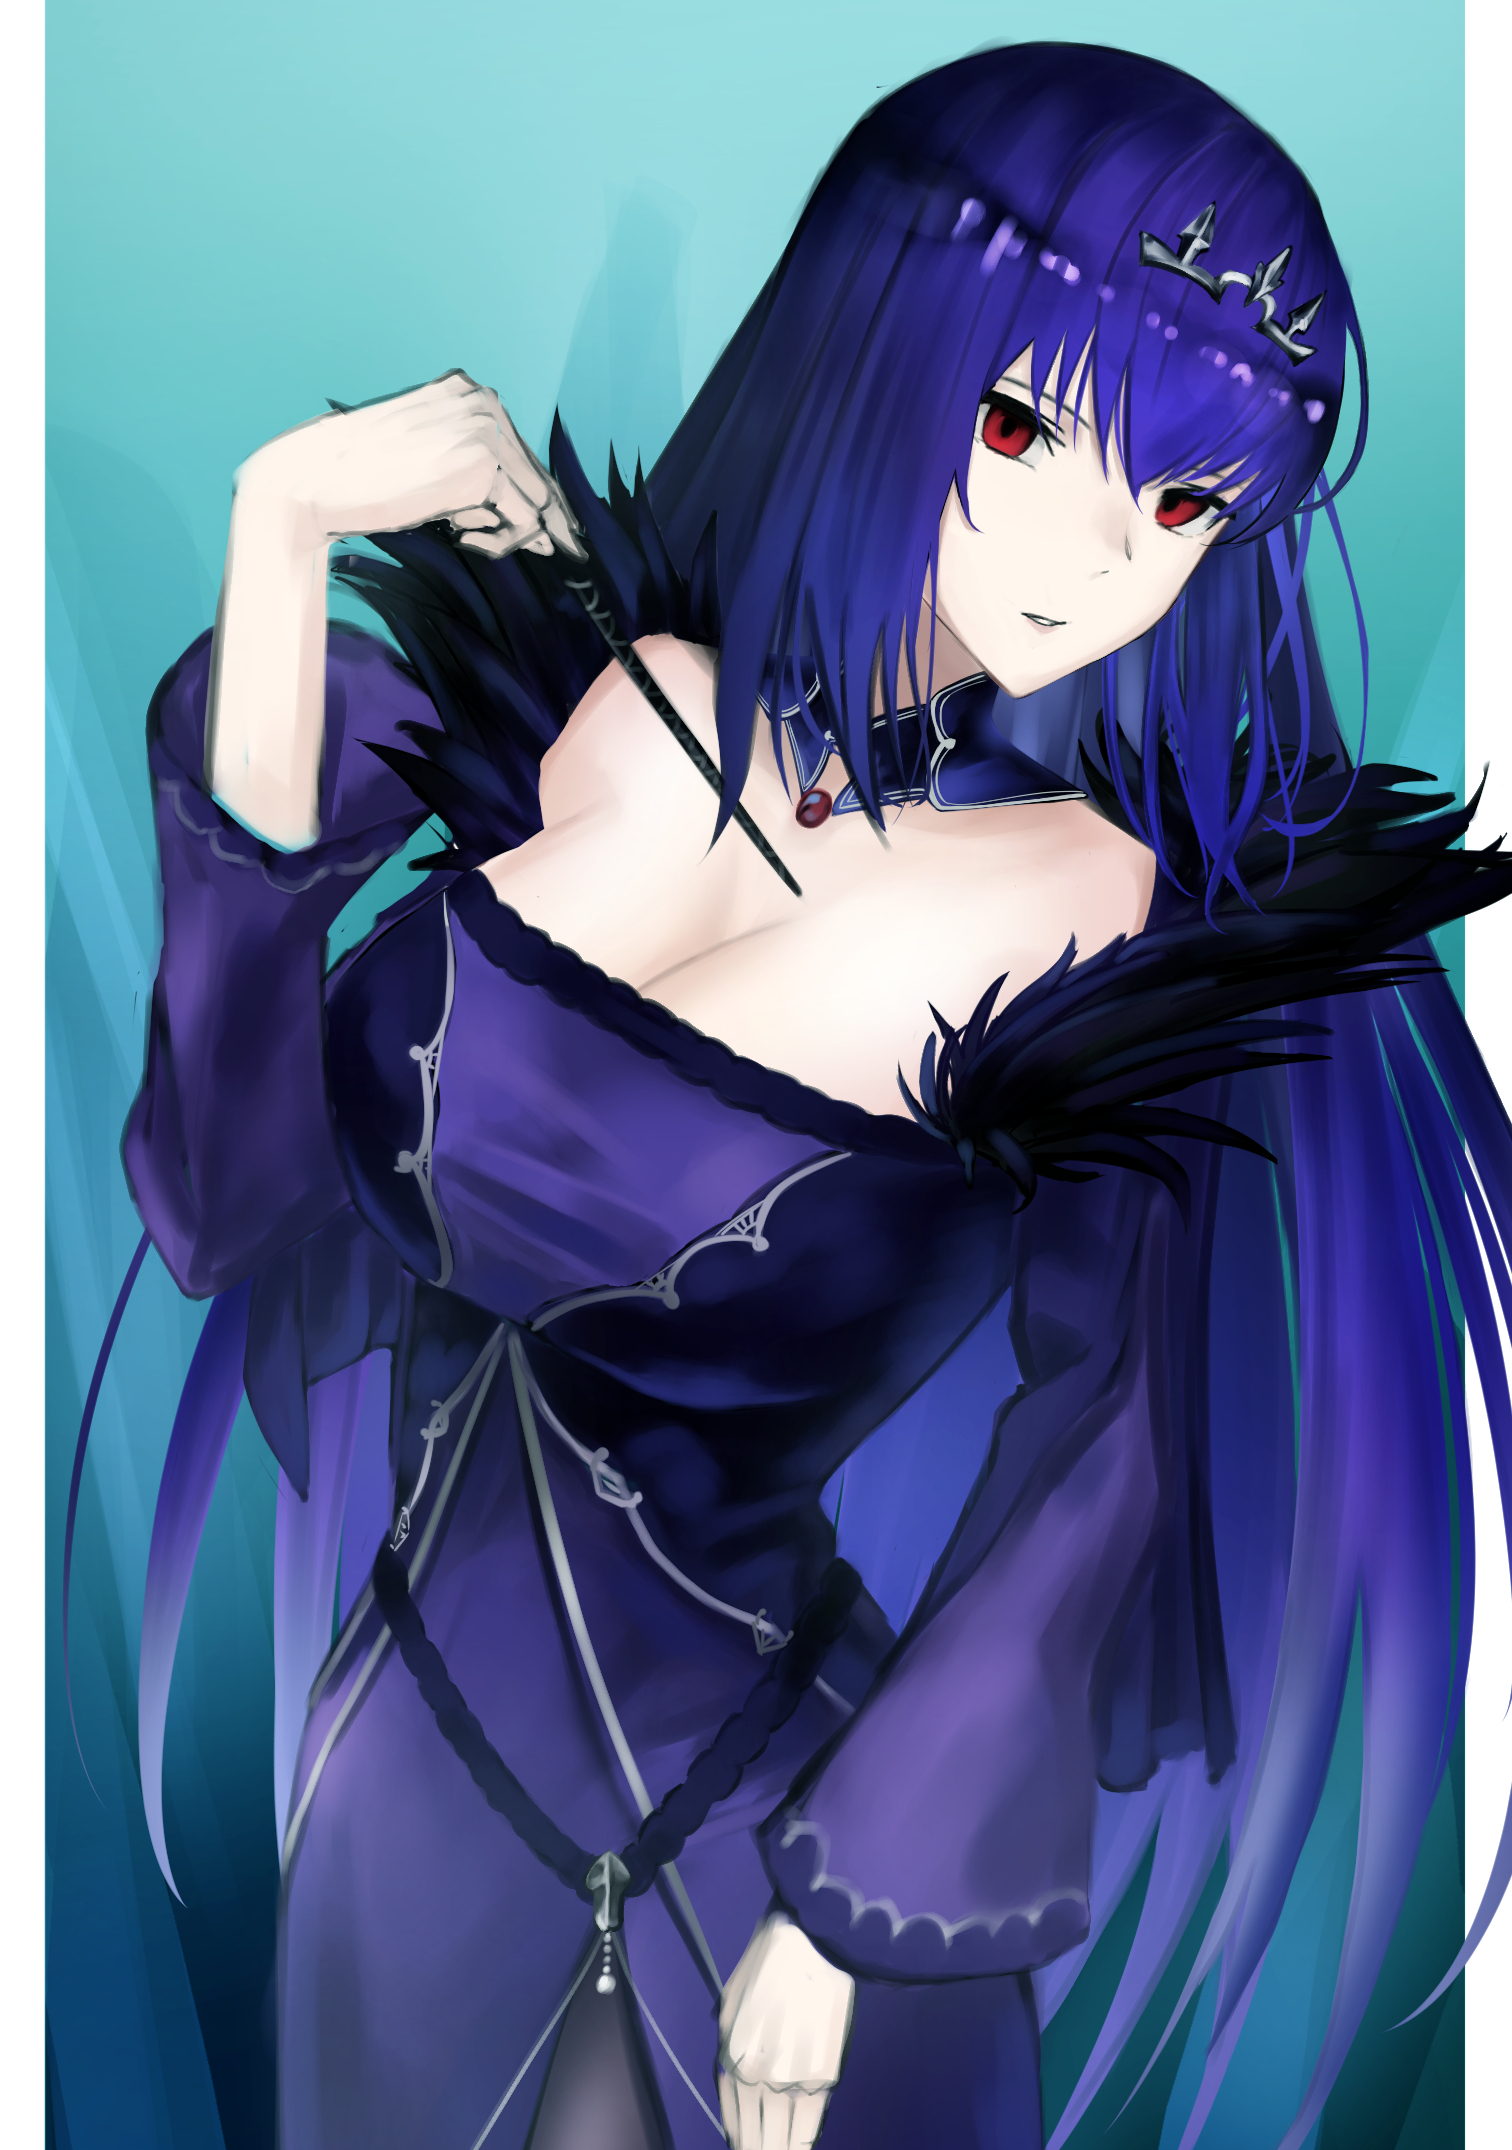 Anime 1512x2150 anime anime girls Fate series Fate/Grand Order Scathach Skadi long hair purple hair boobs